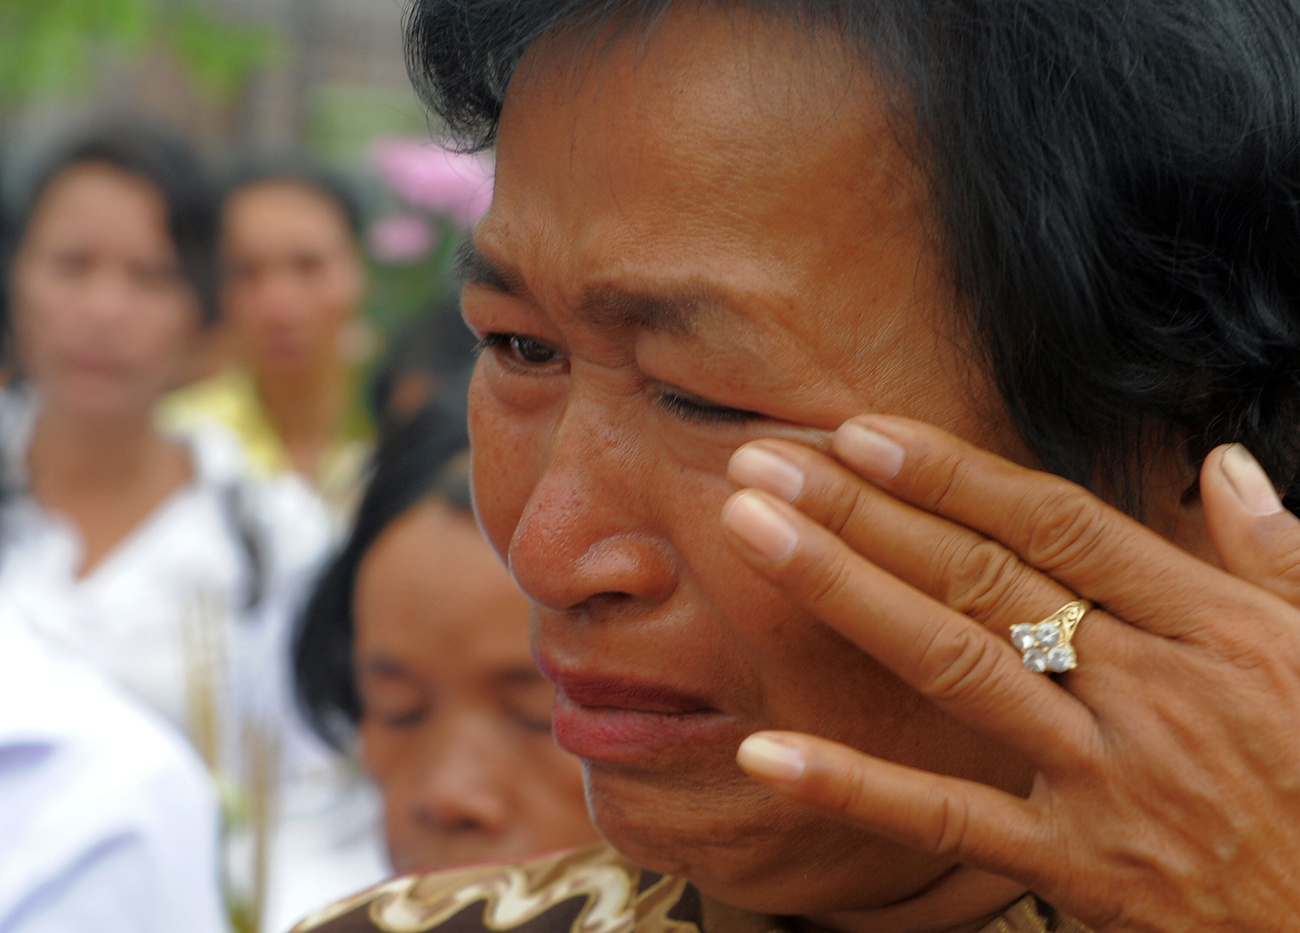 Az ítélet hatására a helyszínen összegyűlt kambodzsaiak közül sokan könnyekben törtek ki.